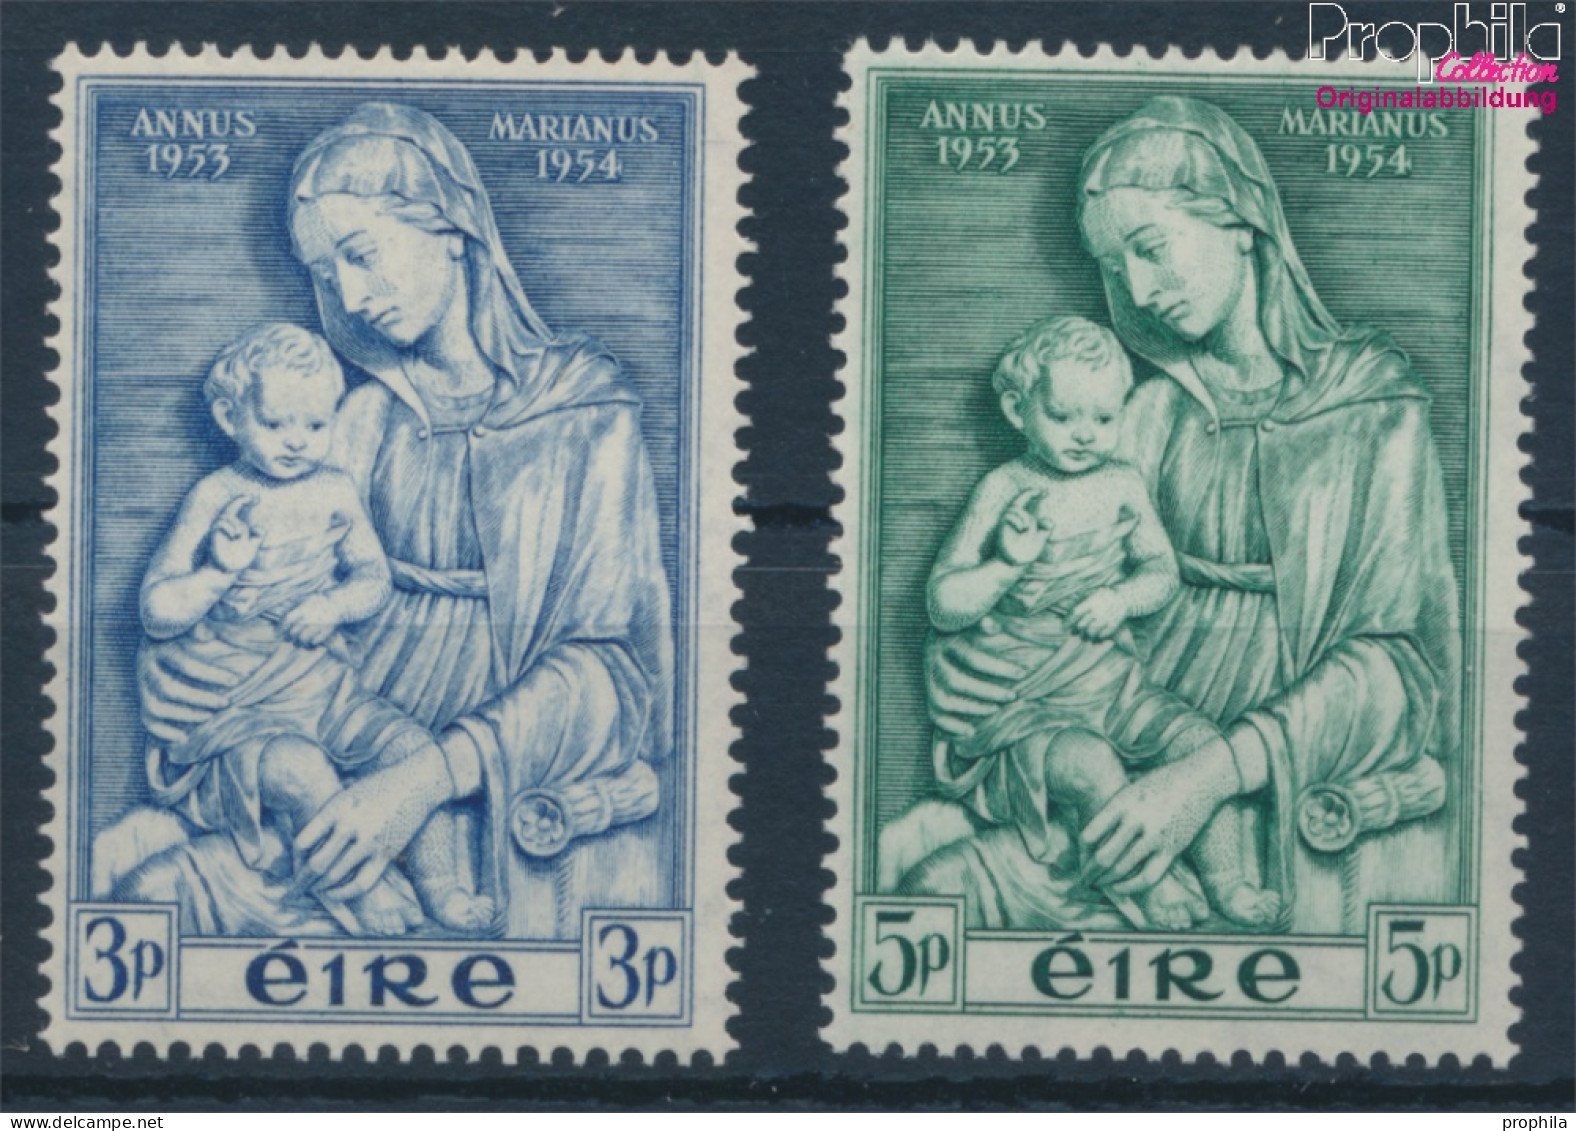 Irland 120-121 (kompl.Ausg.) Postfrisch 1954 Marianisches Jahr (10398343 - Nuevos